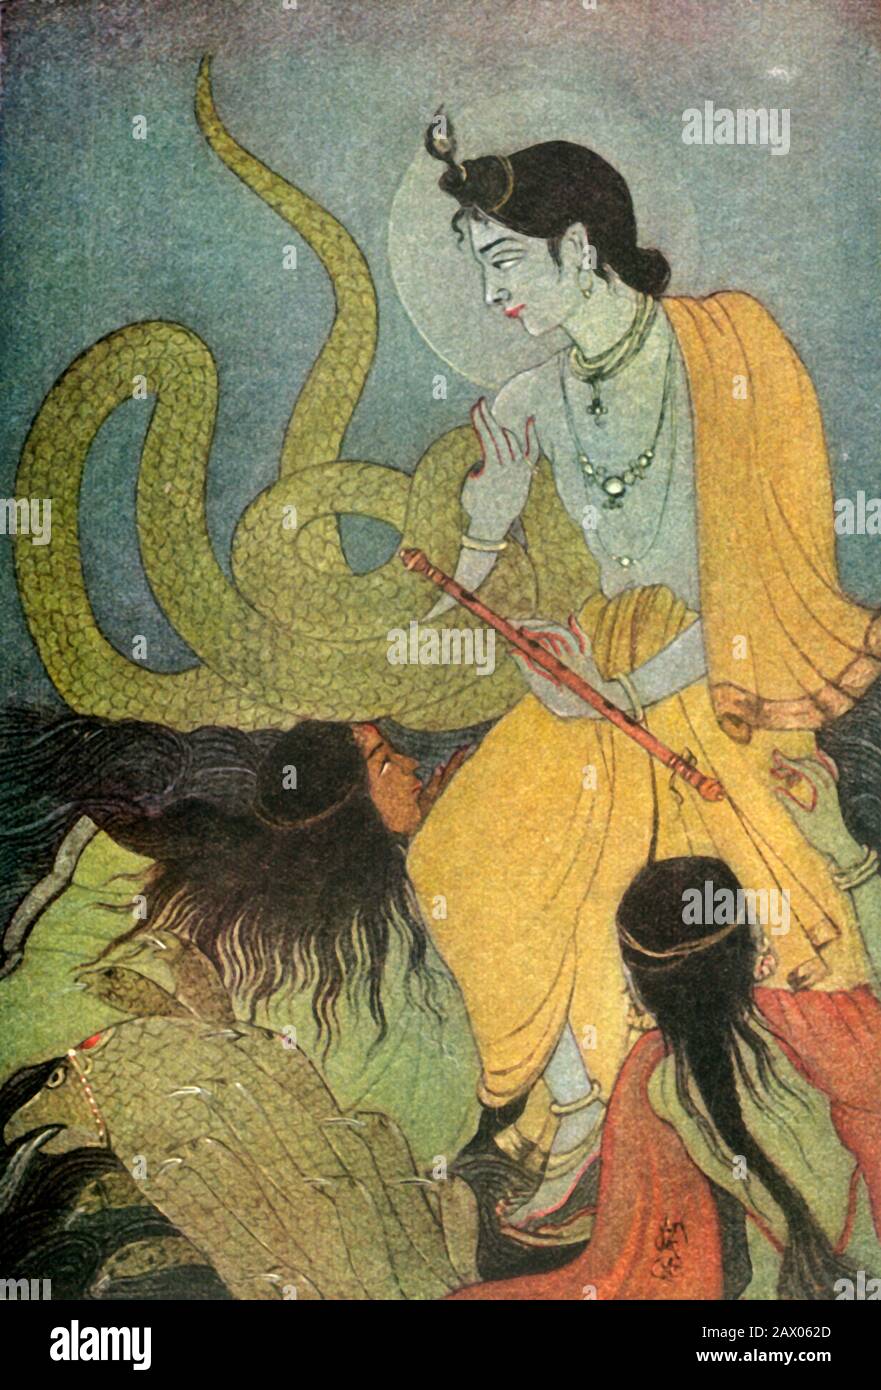 'Kaliya Damana', 1920. En la tradición hindú, Kaliya era una venenosa Naga que vivía en el río Yamuna cerca de Vrindavan. La historia del Señor Krishna bailando y sojuzgando a Kaliya se cuenta en el Bhagavata Purana. De "Mitos de los hindúes &amp; Budistas", por la Hermana Nivedita y Ananda K. Coomaraswamy. [George G. Harrap &amp; Company Ltd, Londres, 1920] Foto de stock